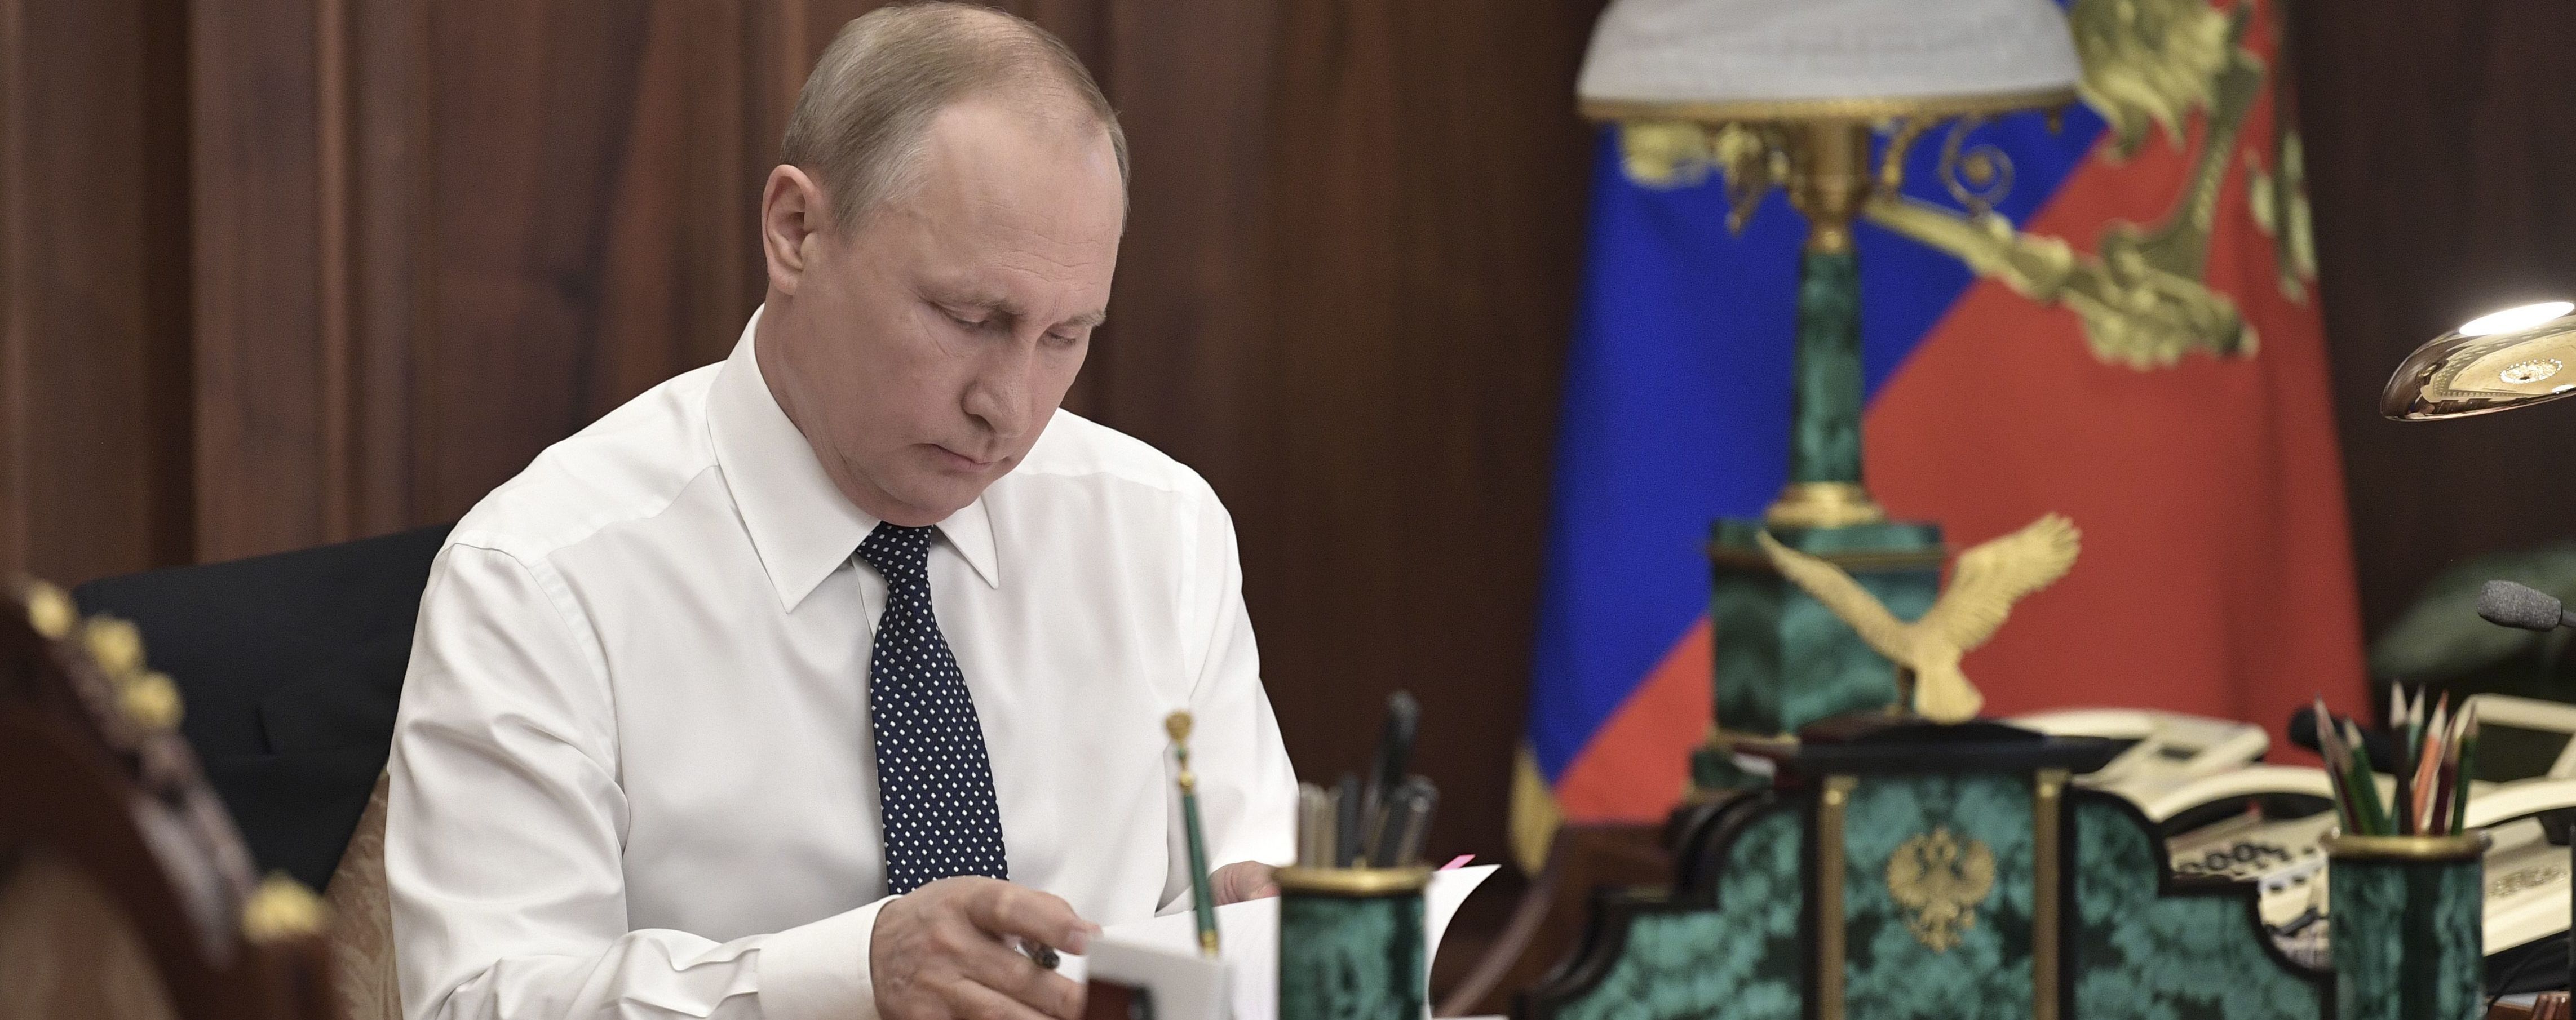 Последний шаг: Путин подписал указ о внесении поправок к Конституции РФ